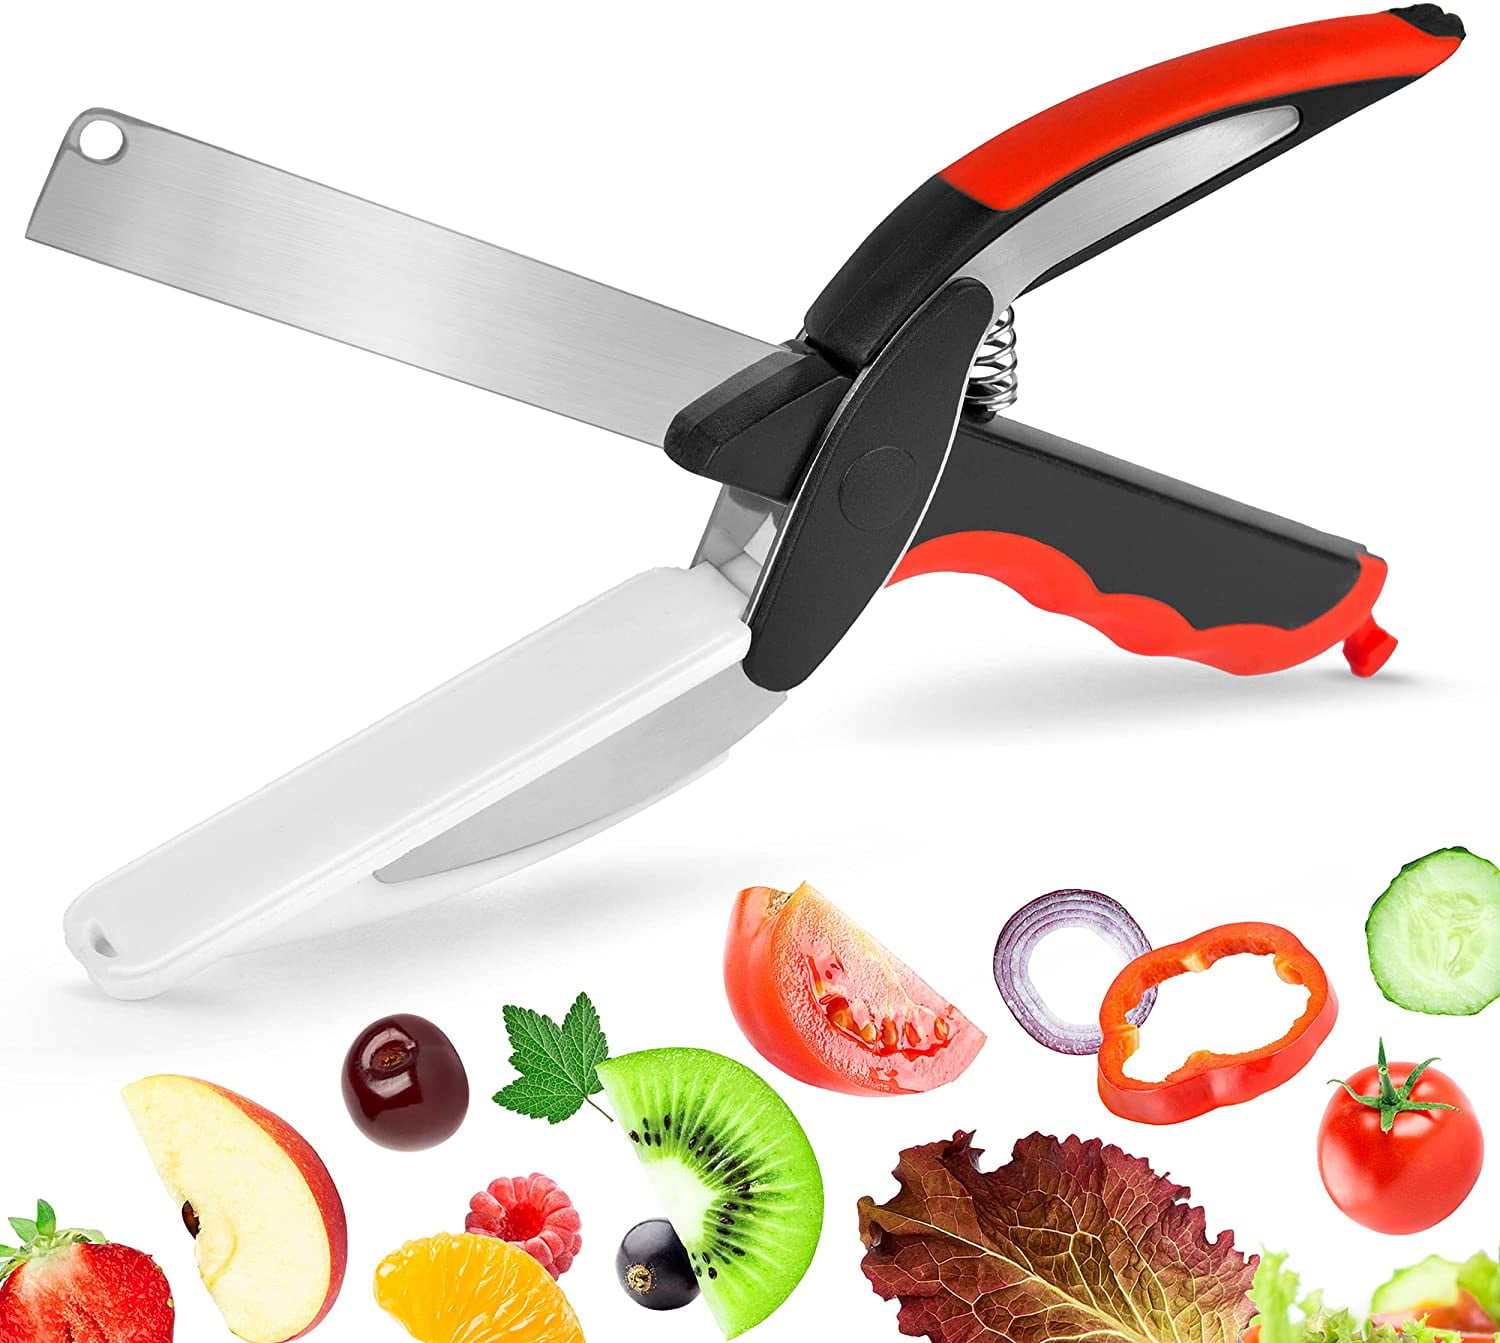 2 in1 Stainless steel Scissors Cutter Cutting Board Food meat vegtables chopper 